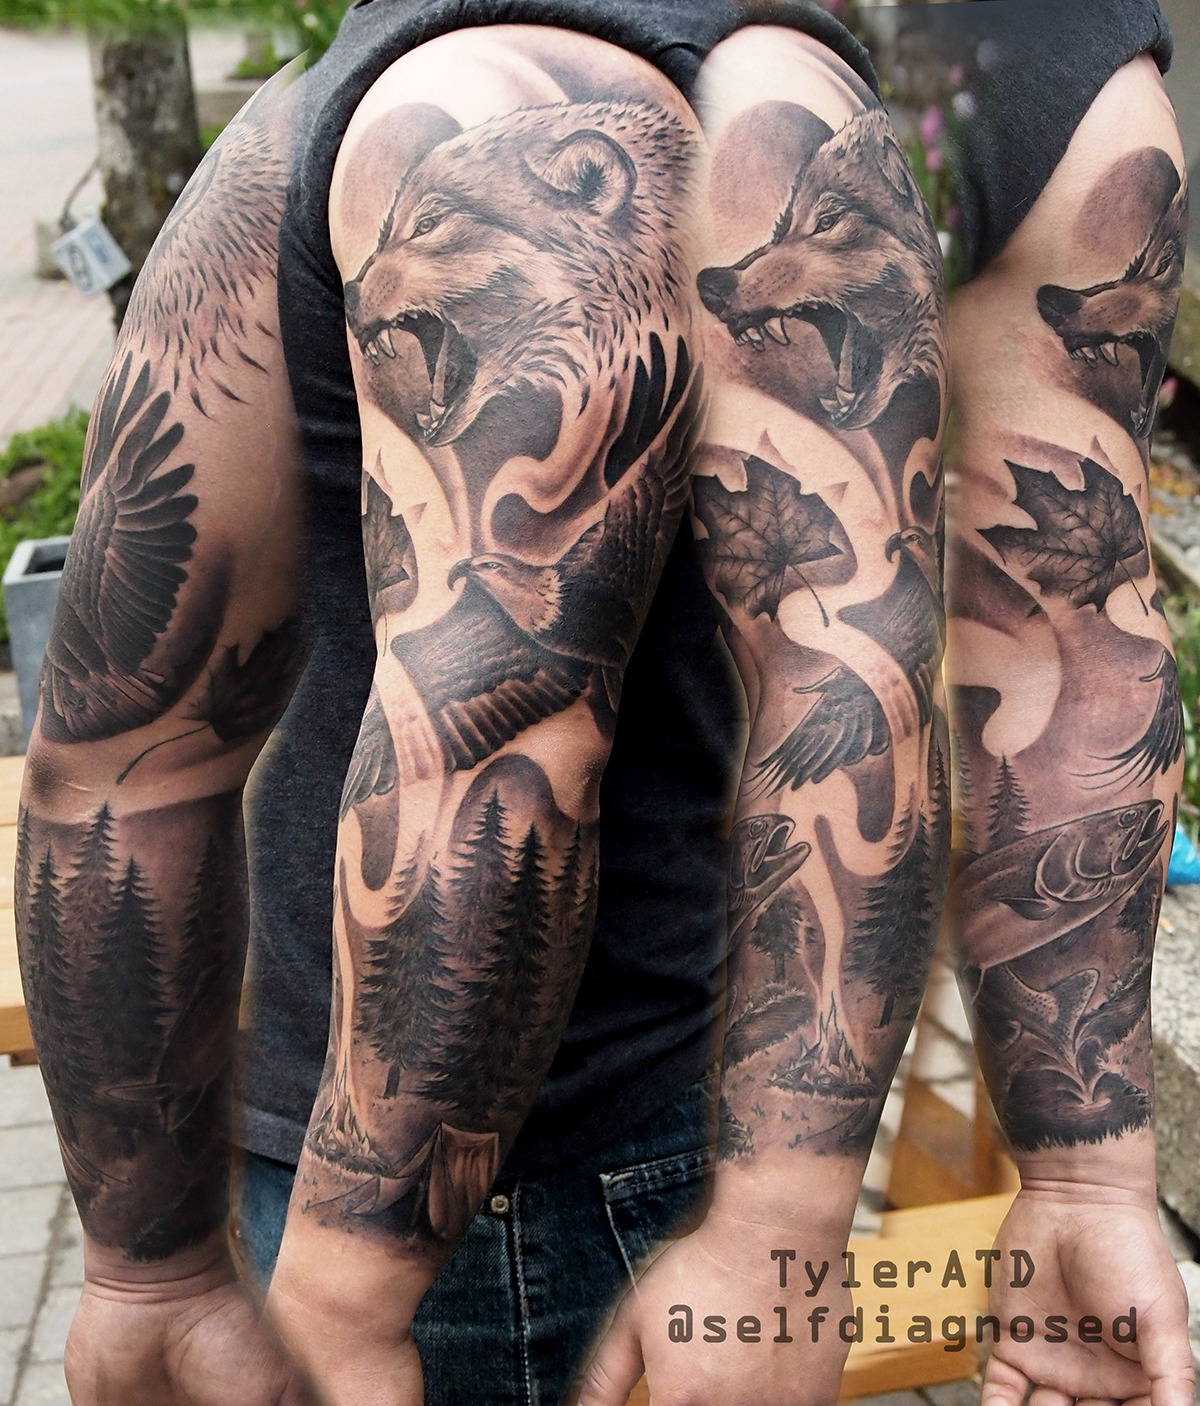 Tyler ATD Tattoos on Tumblr